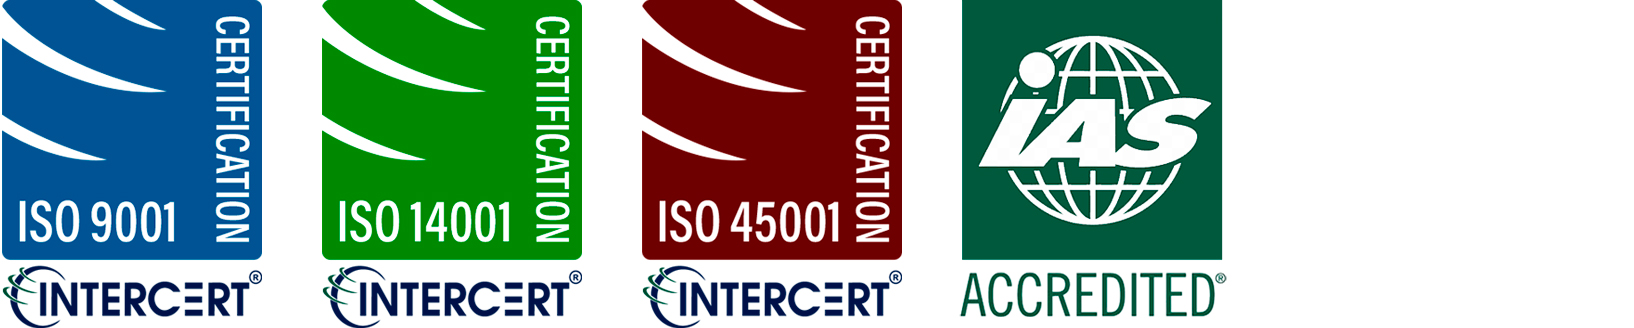 Certificaciones ISO9001, ISO14001, ISO45001 y ACCREDITED